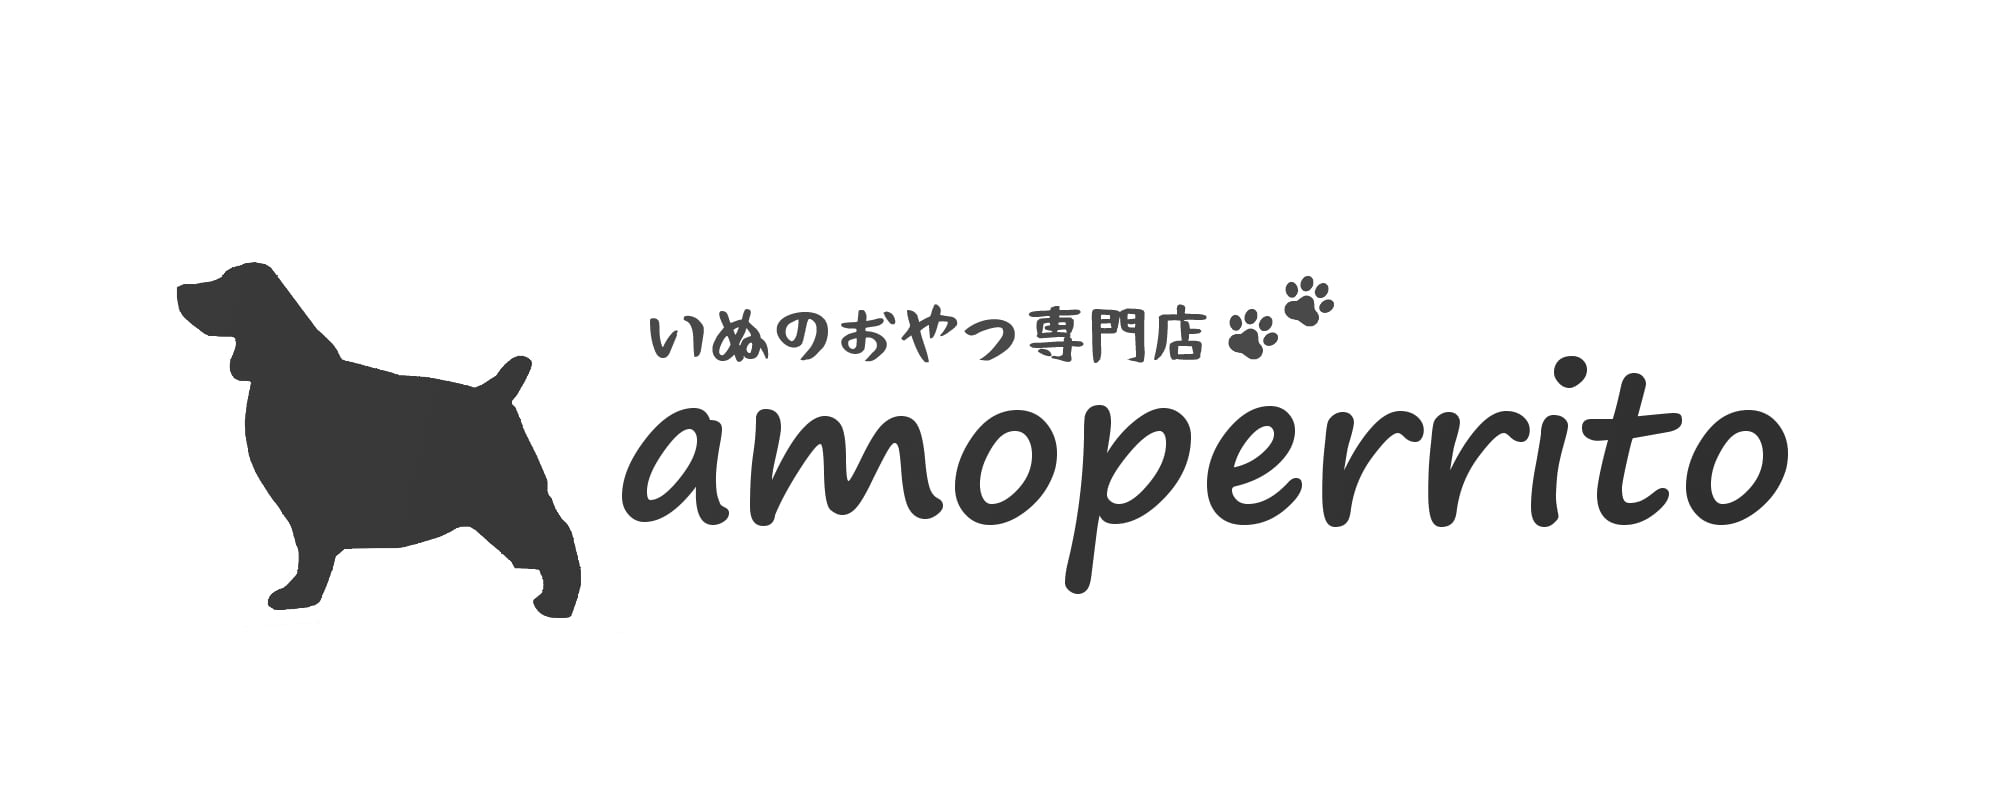 いぬのおやつ専門店「amoperrito」国産・無添加・無着色でプレゼントにおすすめ、犬の高級おやつ